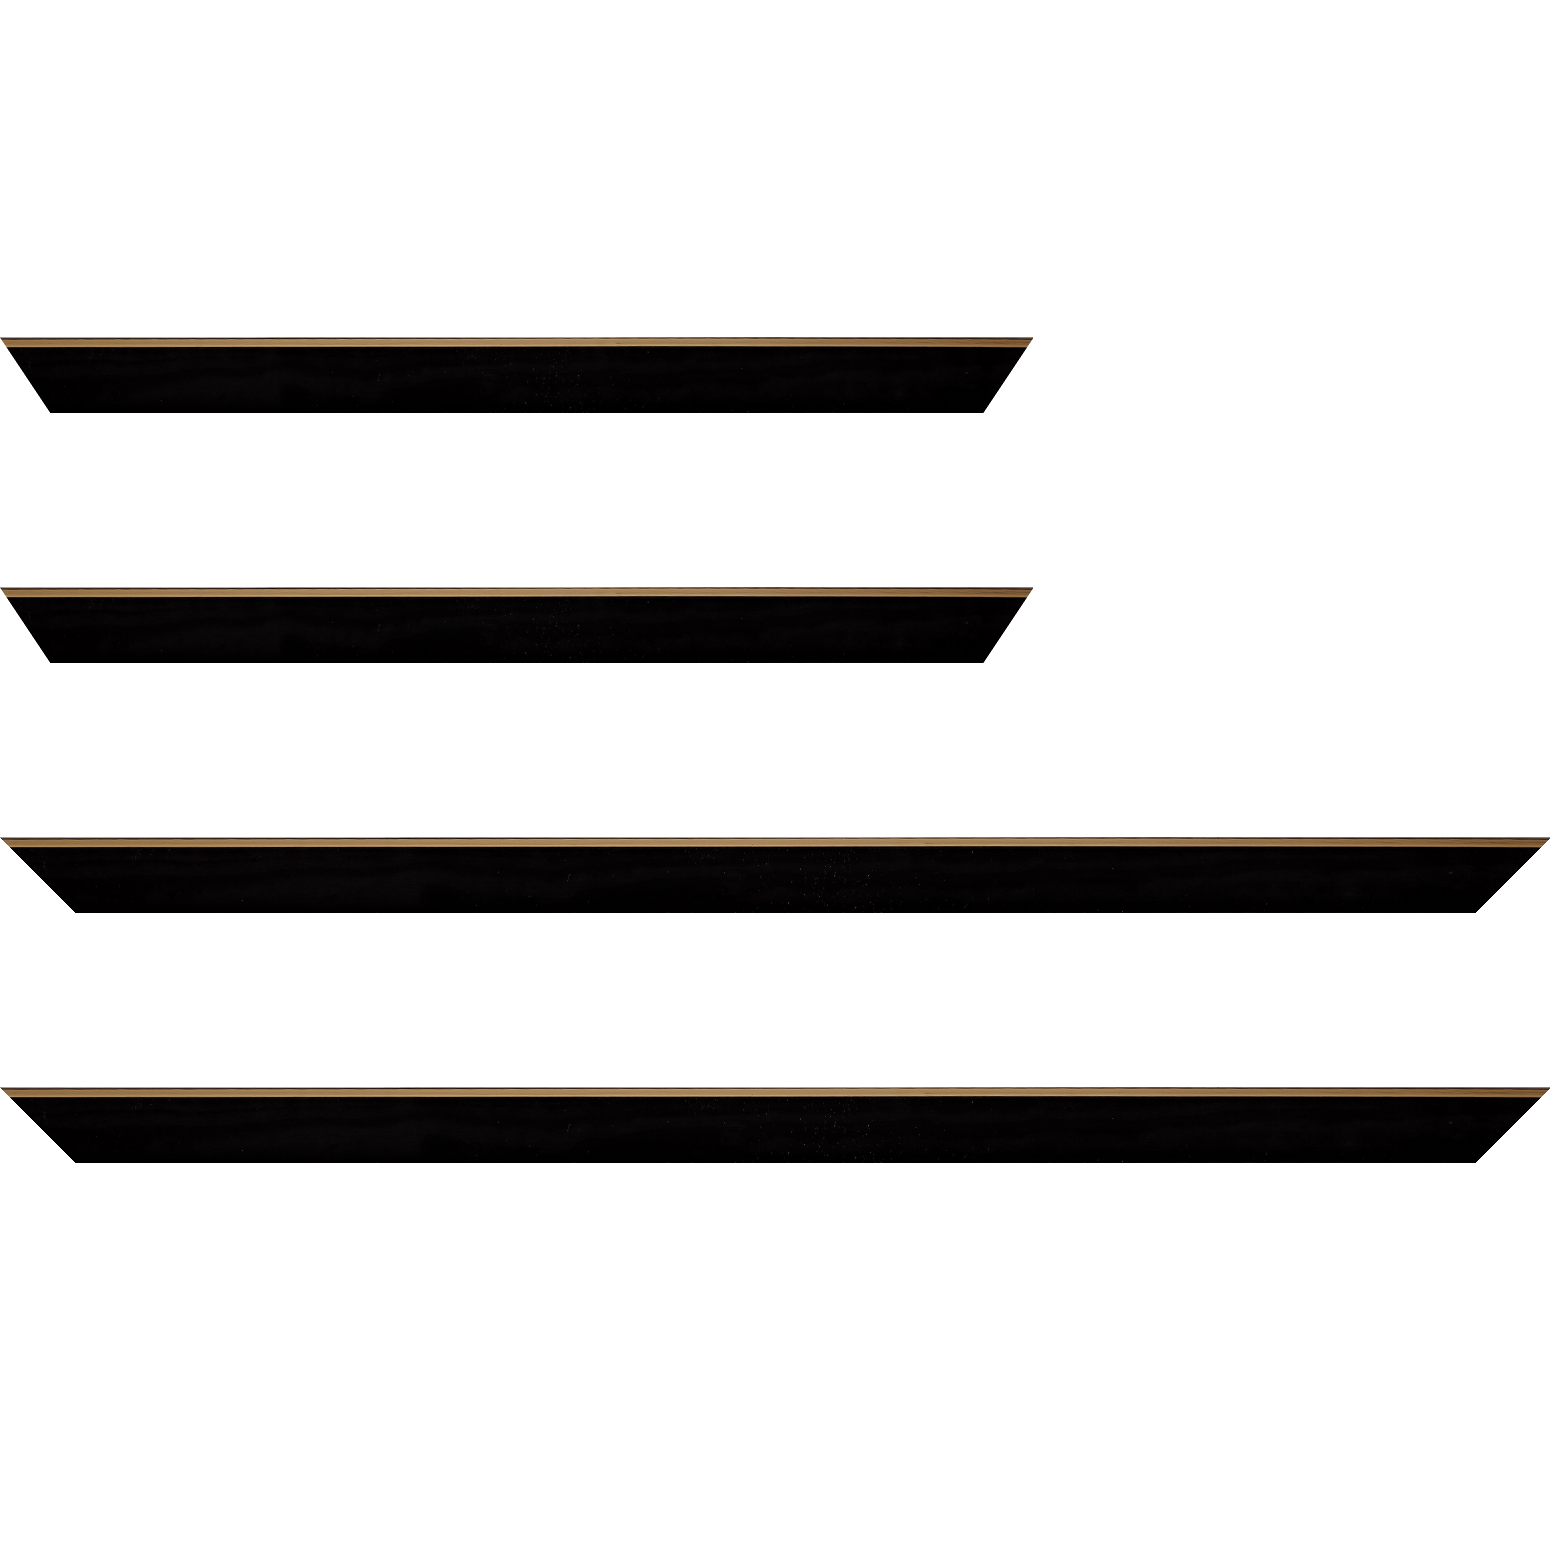 Baguette bois profil arrondi en pente plongeant largeur 2.4cm couleur noir satiné,veine du bois  apparent (pin) , angle du cadre extérieur filet or chromé - 34x40